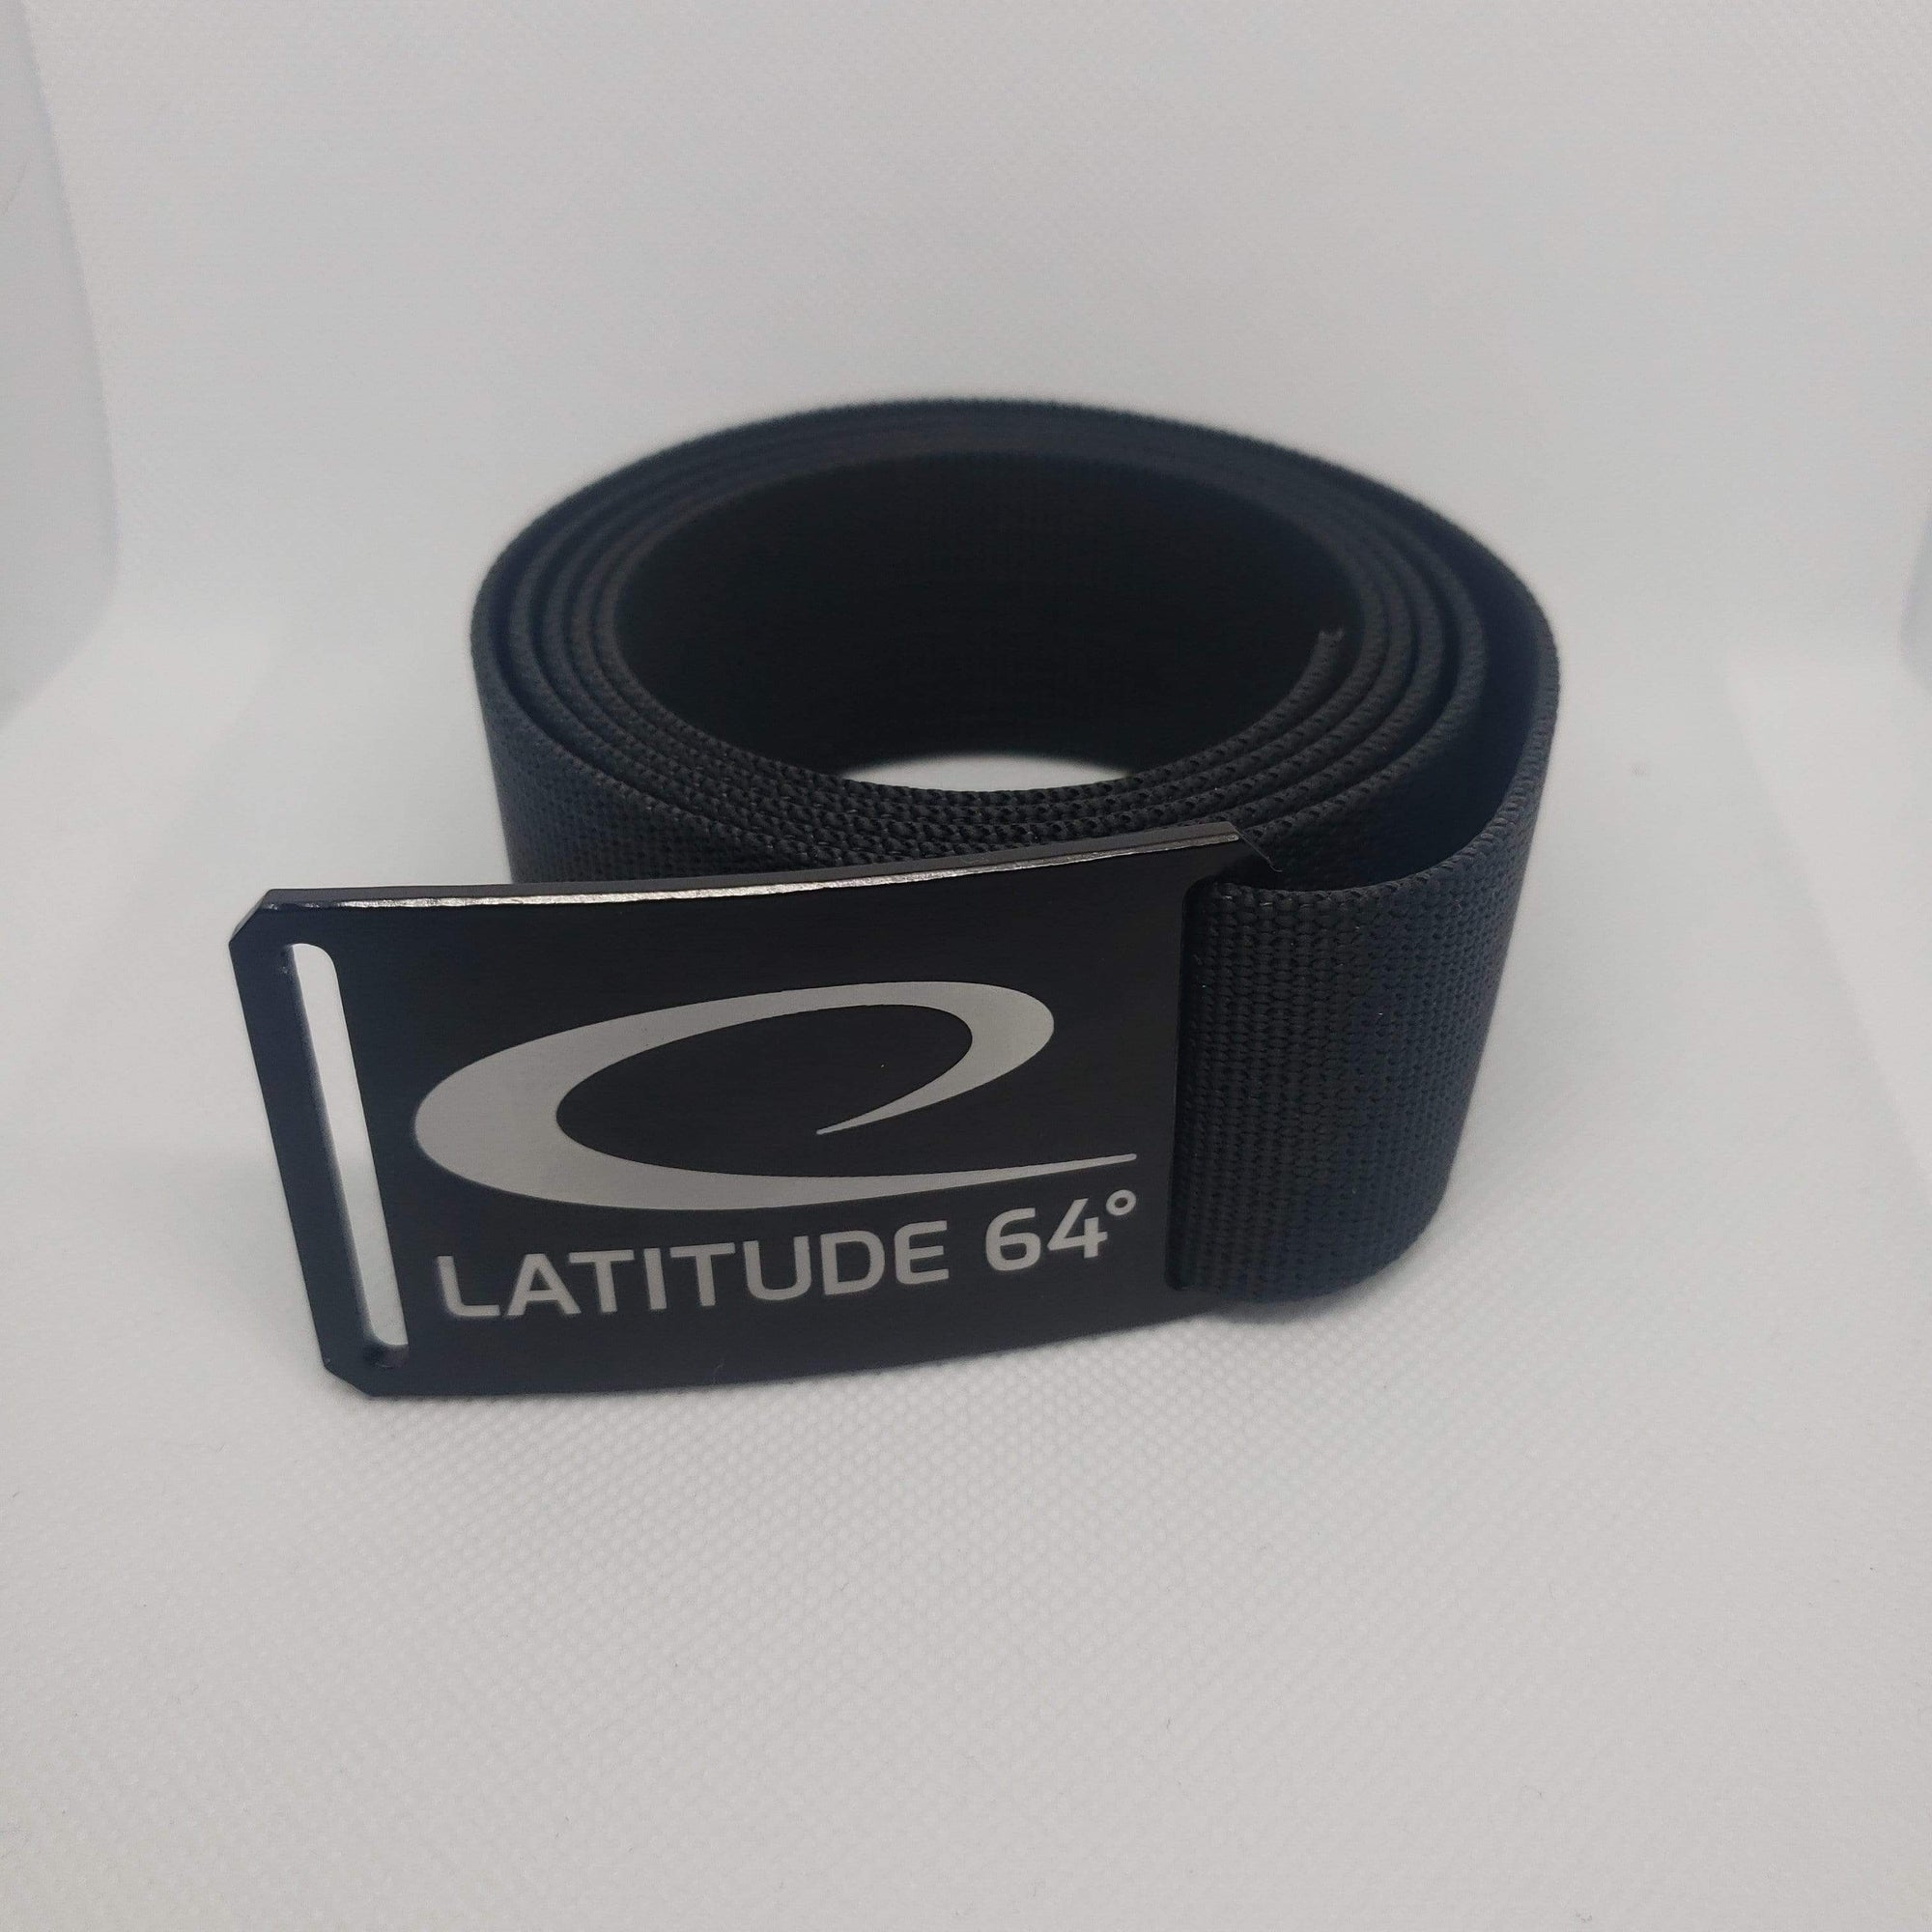 Latitude 64 accessories Latitude 64 Grip6 Belt Black Strap